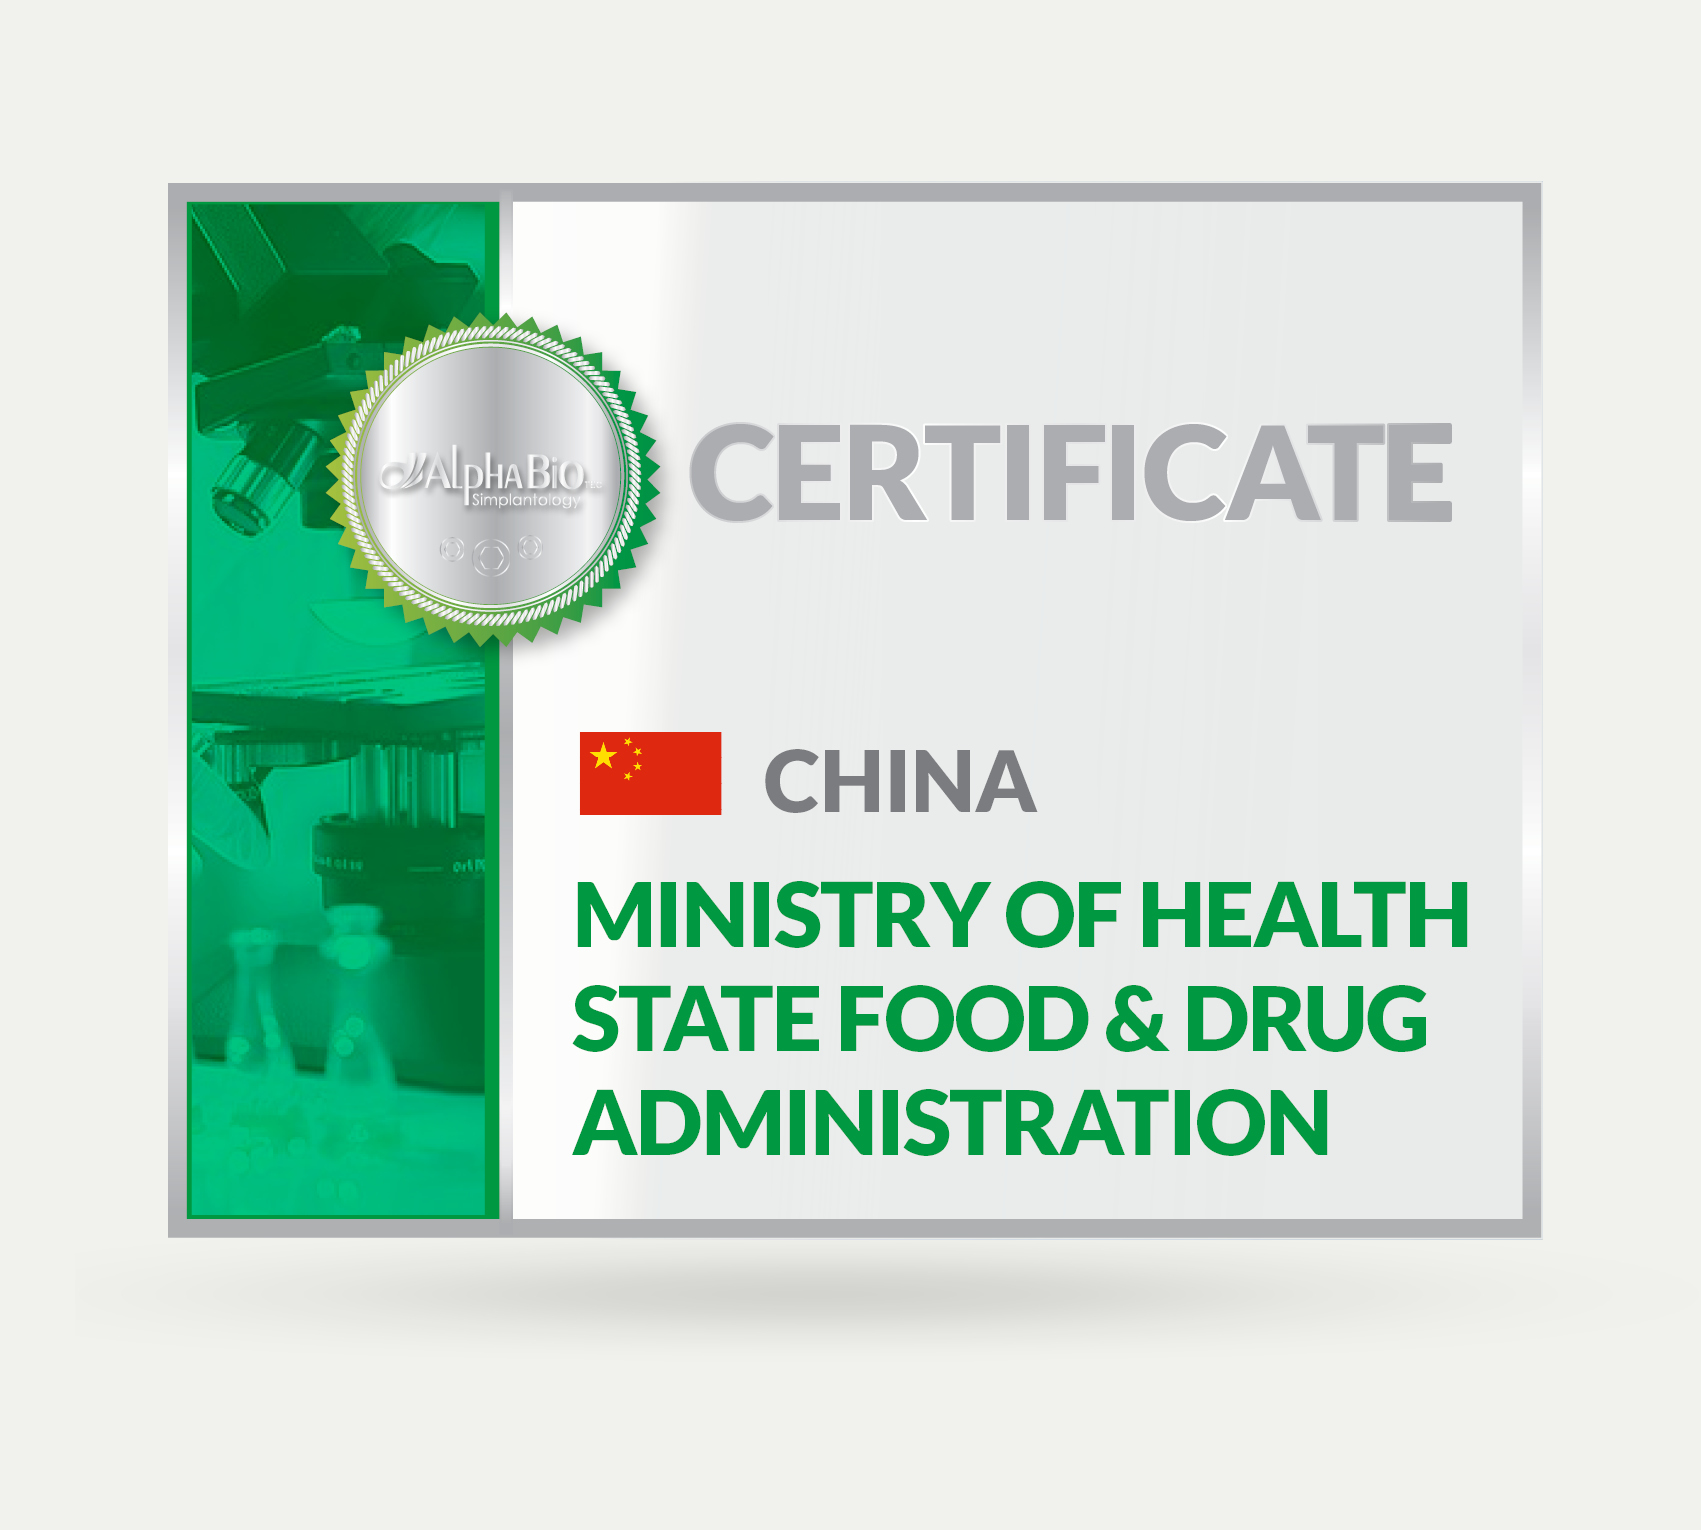 Certificate_China - Alpha Bio Tec